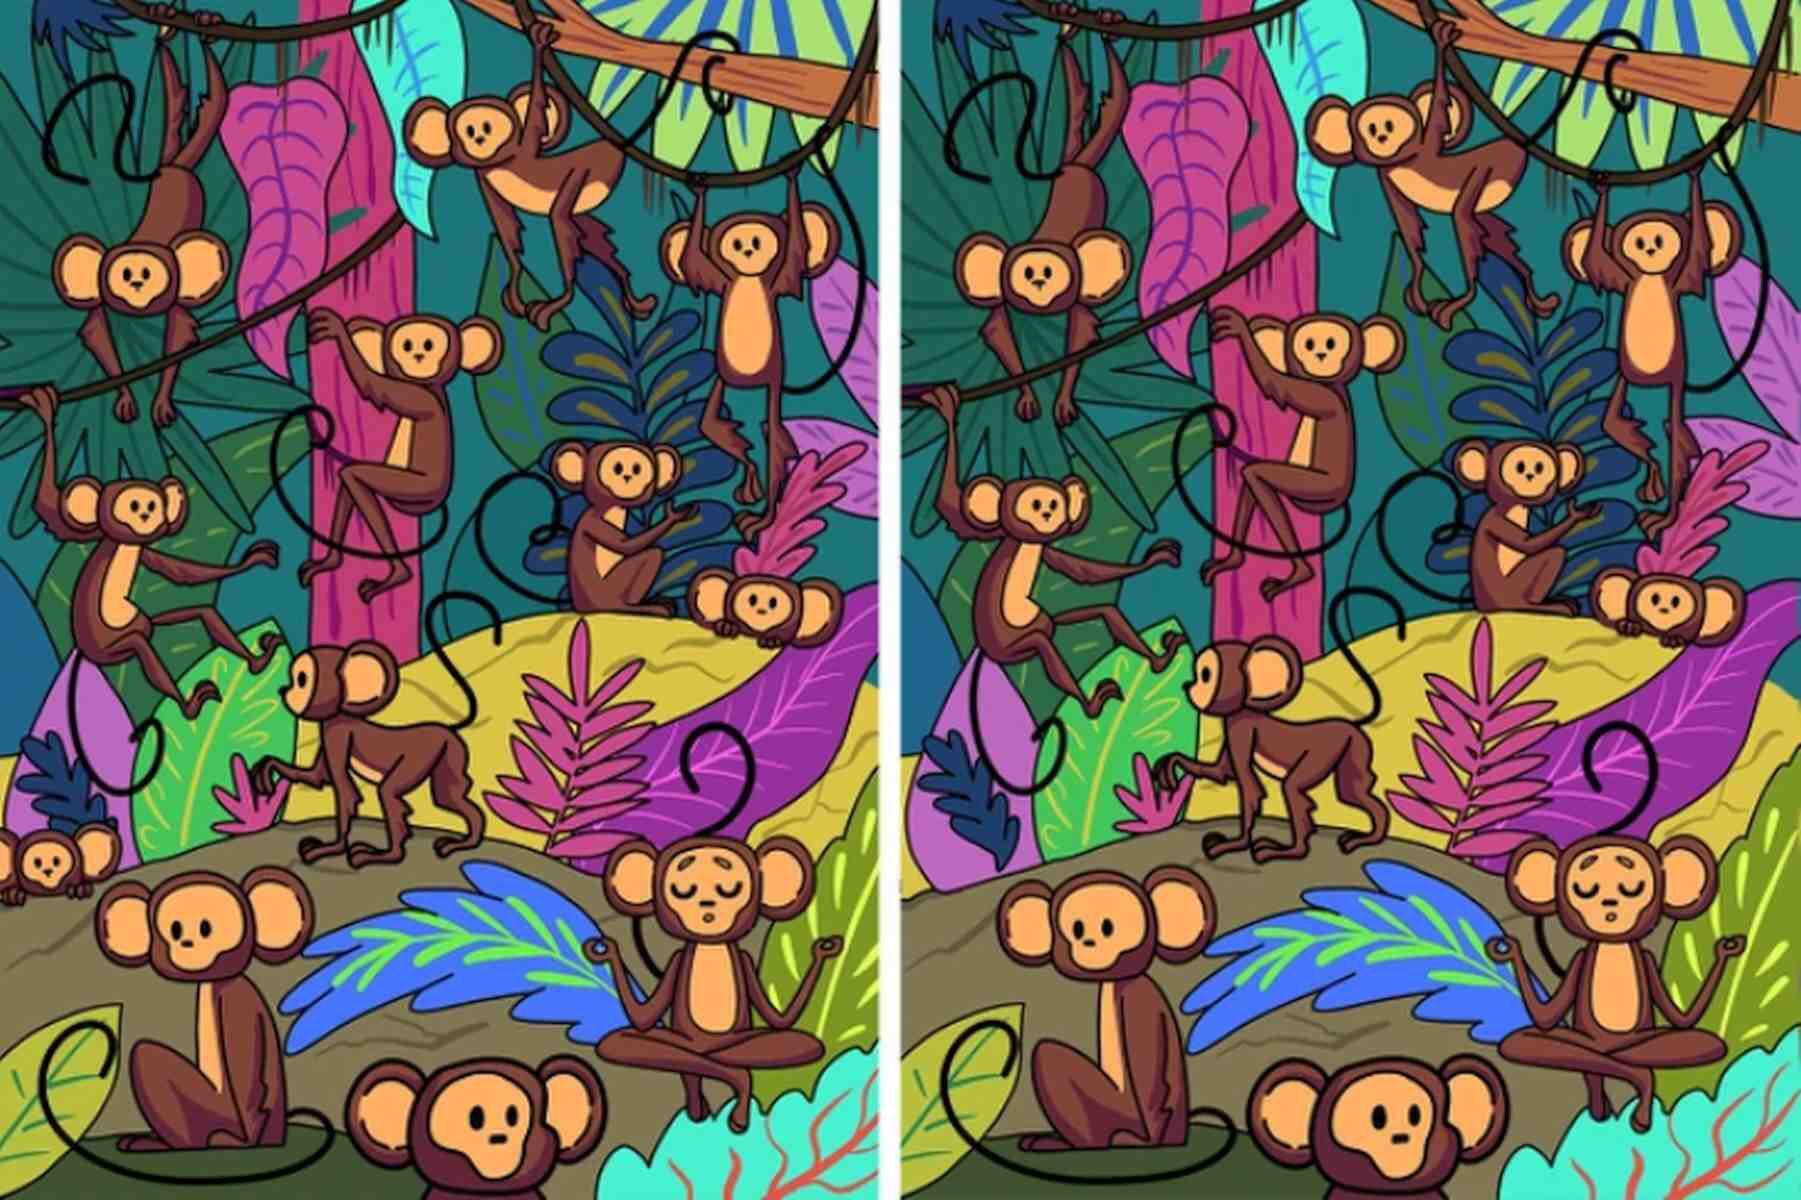 RETO VISUAL | Estas dos imágenes de monos parecen iguales, pero no. Tienen una diferencia. (Foto: genial.guru)